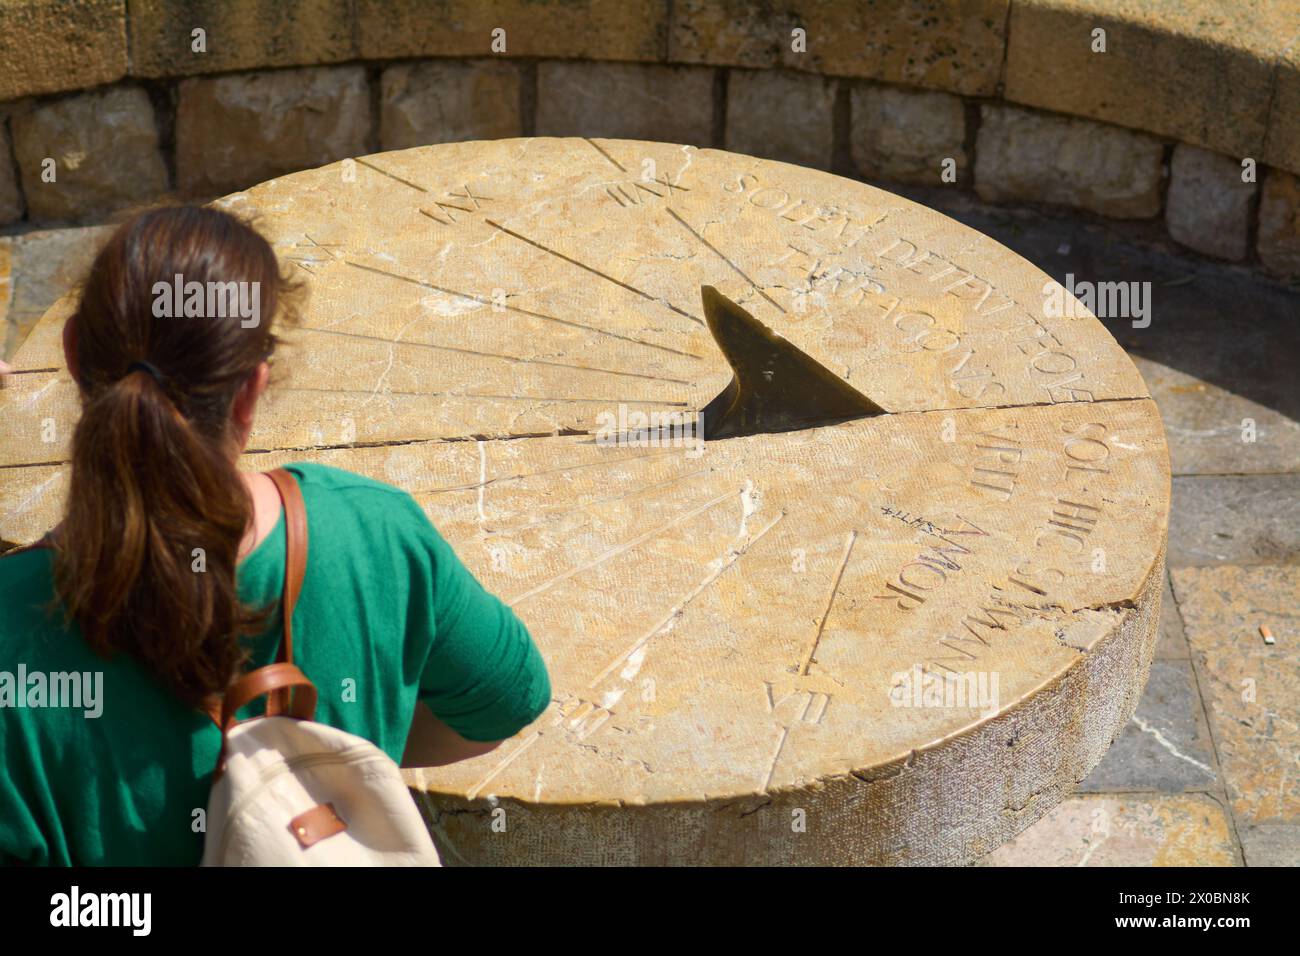 Vue arrière d'une femme méconnaissable contemplant un cadran solaire en pierre, avec des inscriptions érodées, dans un environnement naturel qui reflète l'histoire et m Banque D'Images